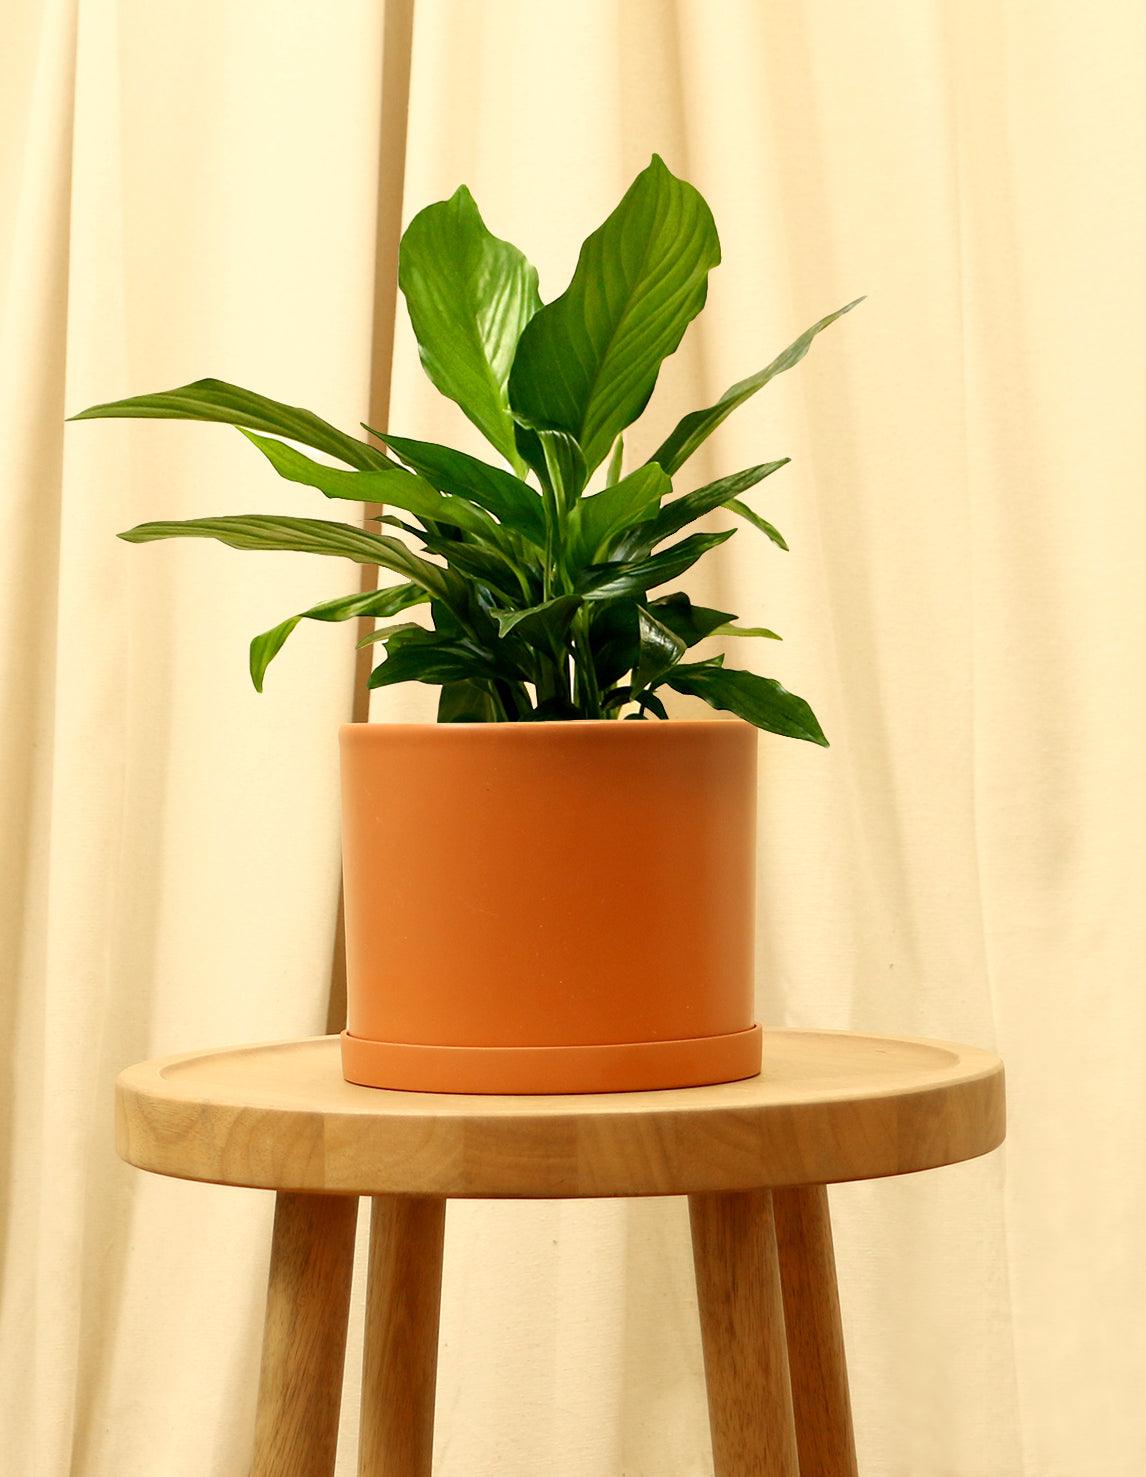 Medium Peace Lily in orange pot.